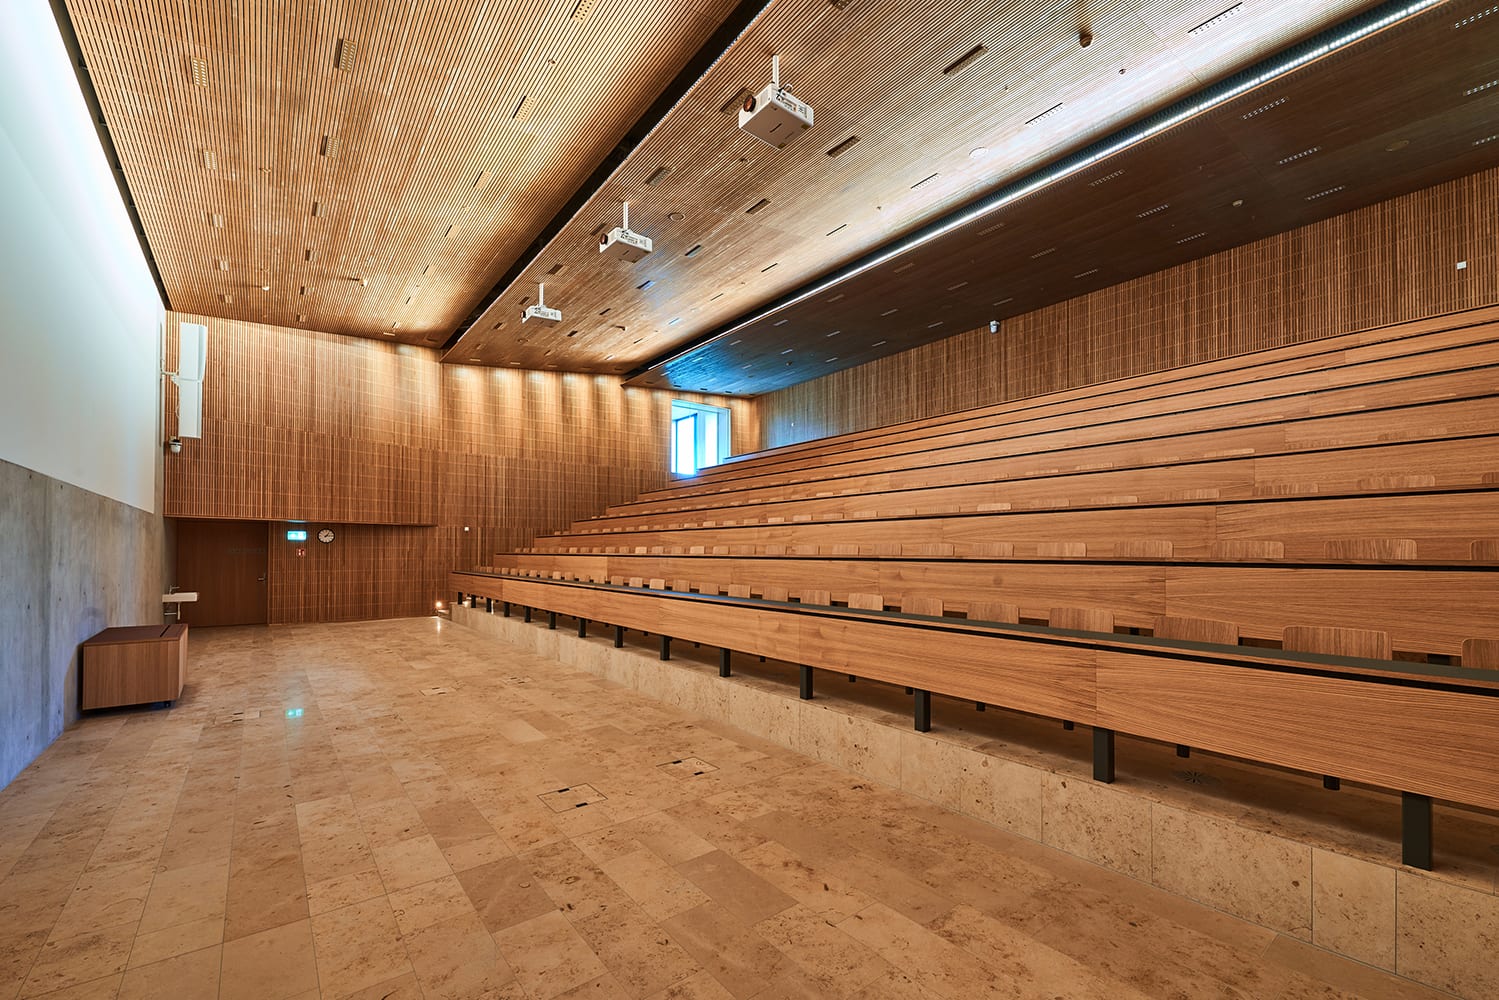 Der Hörsaal Audi max auf dem neuen Campus Zug-Rotkreuz.